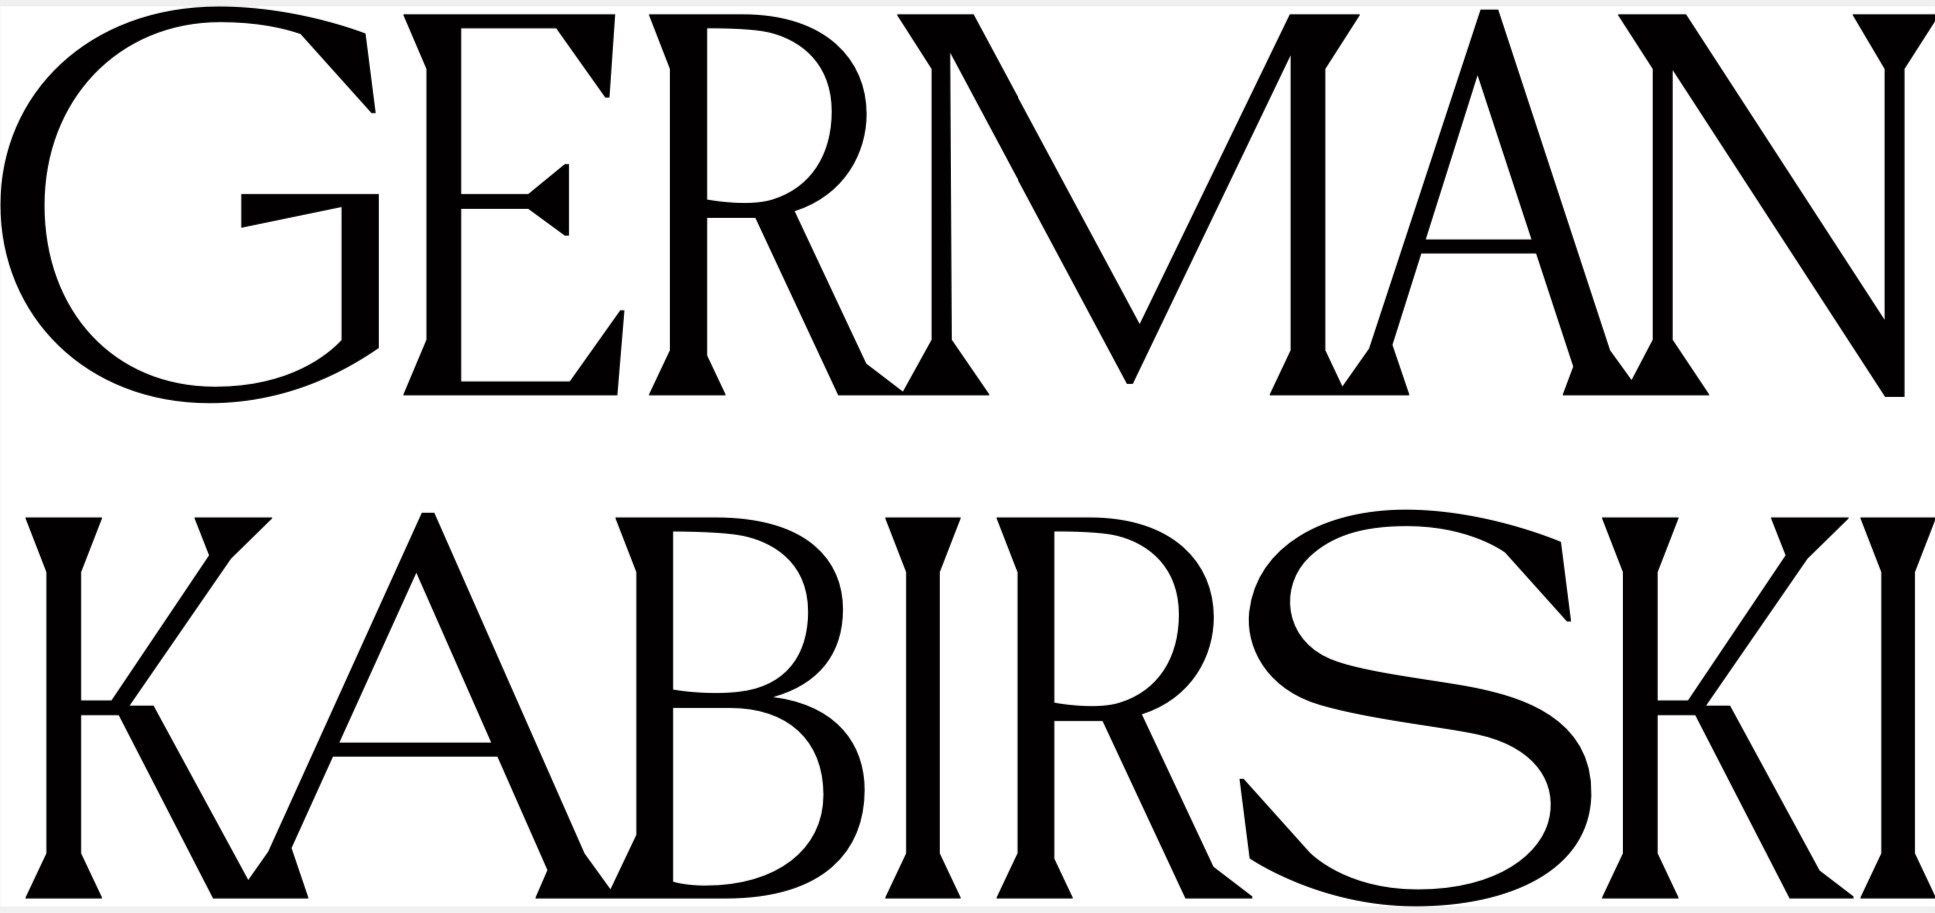 German Kabirski coupons logo